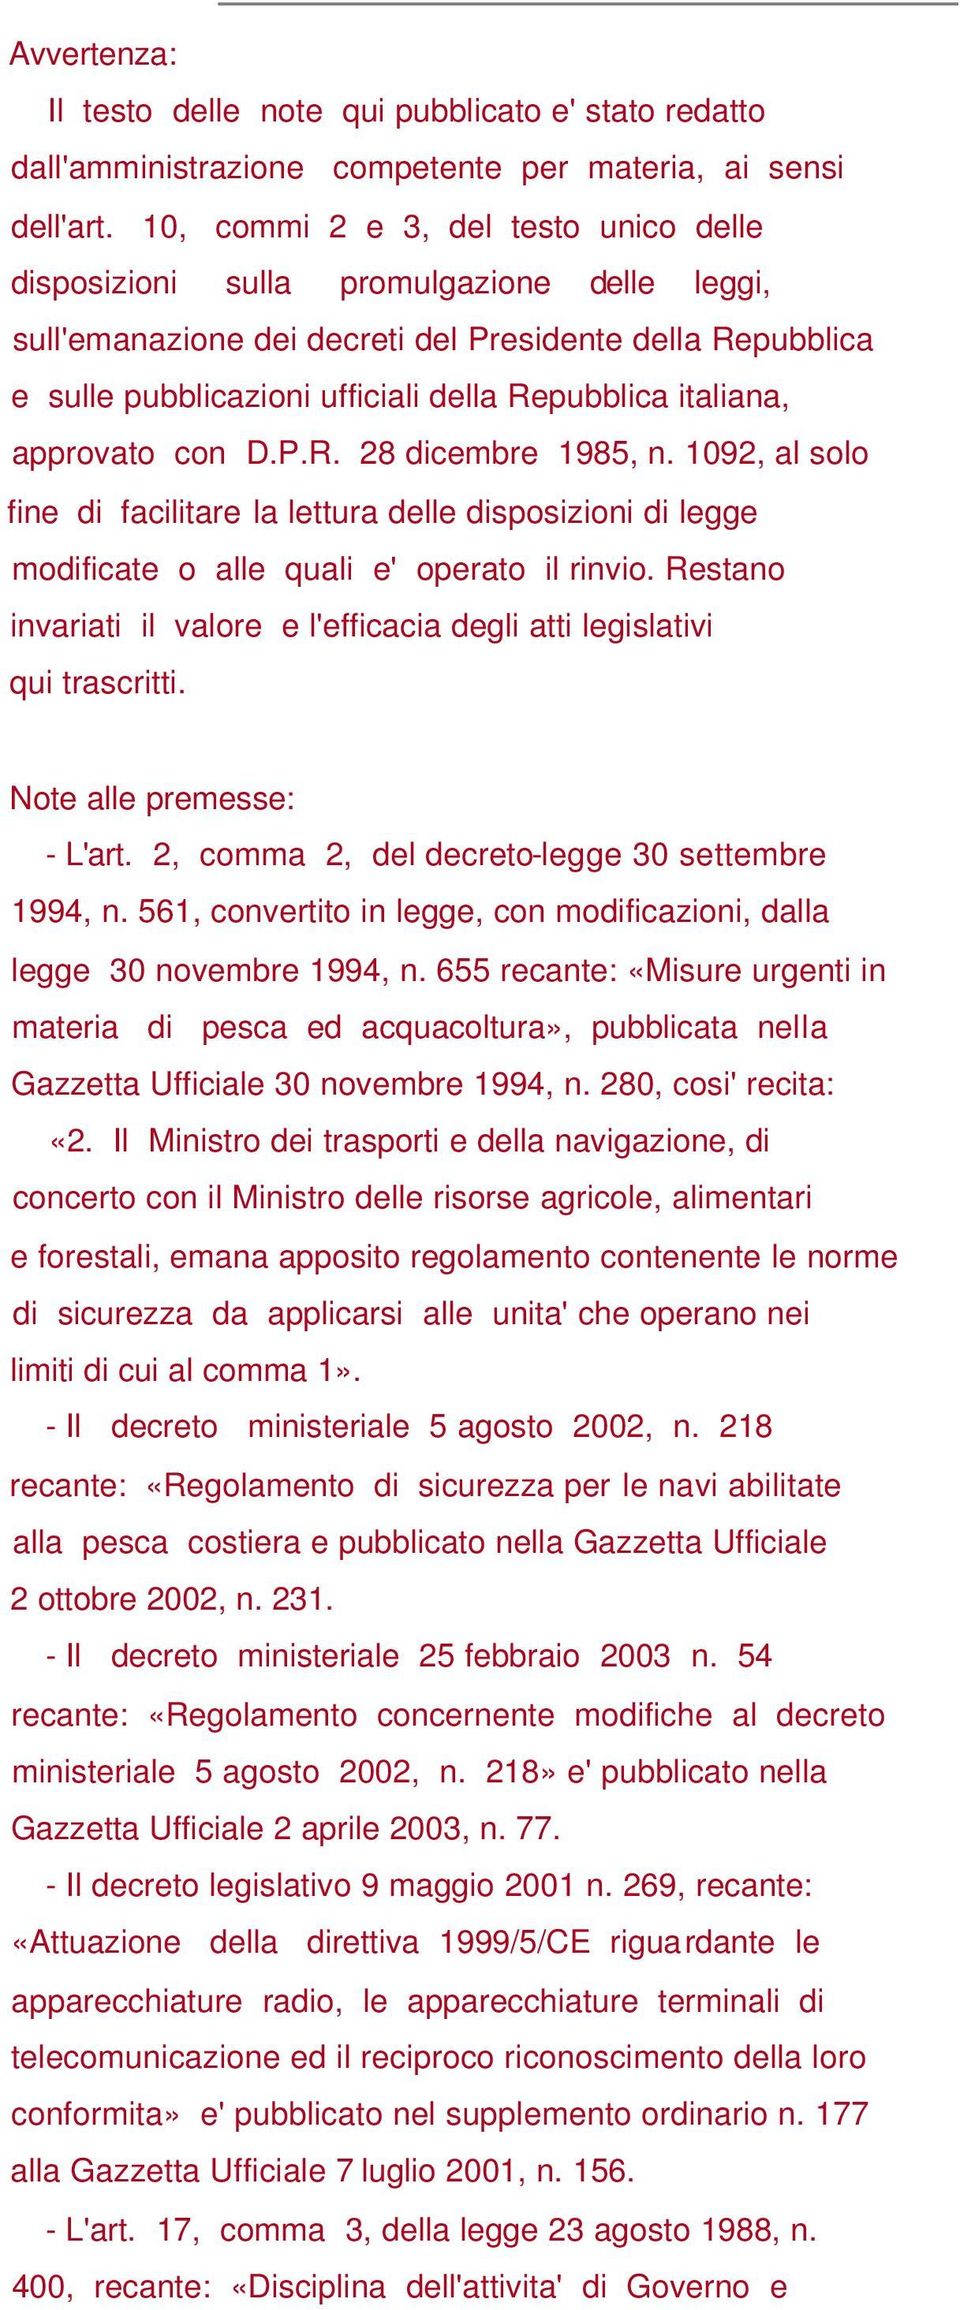 italiana, approvato con D.P.R. 28 dicembre 1985, n. 1092, al solo fine di facilitare la lettura delle disposizioni di legge modificate o alle quali e' operato il rinvio.